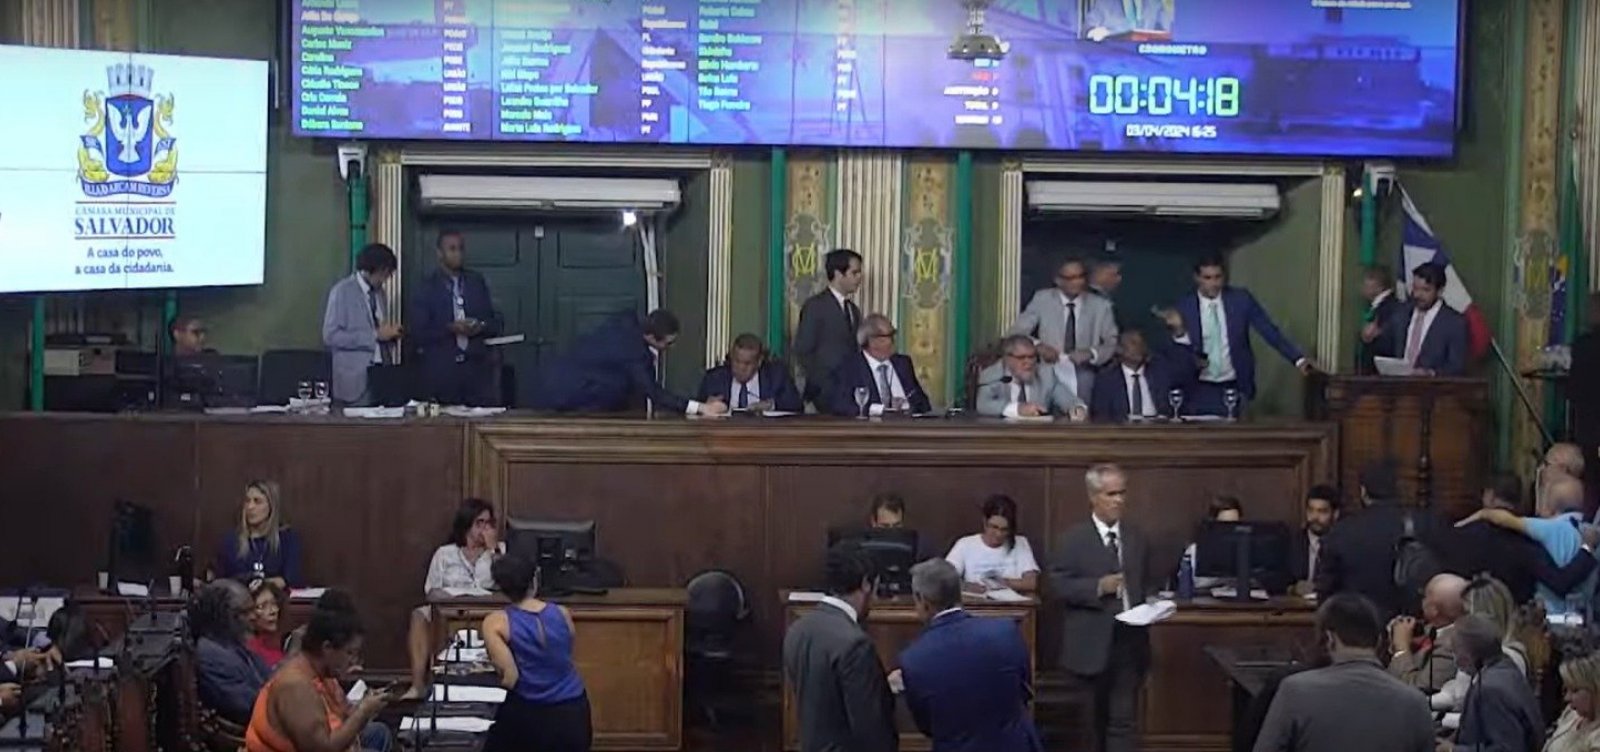 Por unanimidade, Câmara de Salvador aprova reajuste salarial de 4% para servidores municipais e 8% para professores